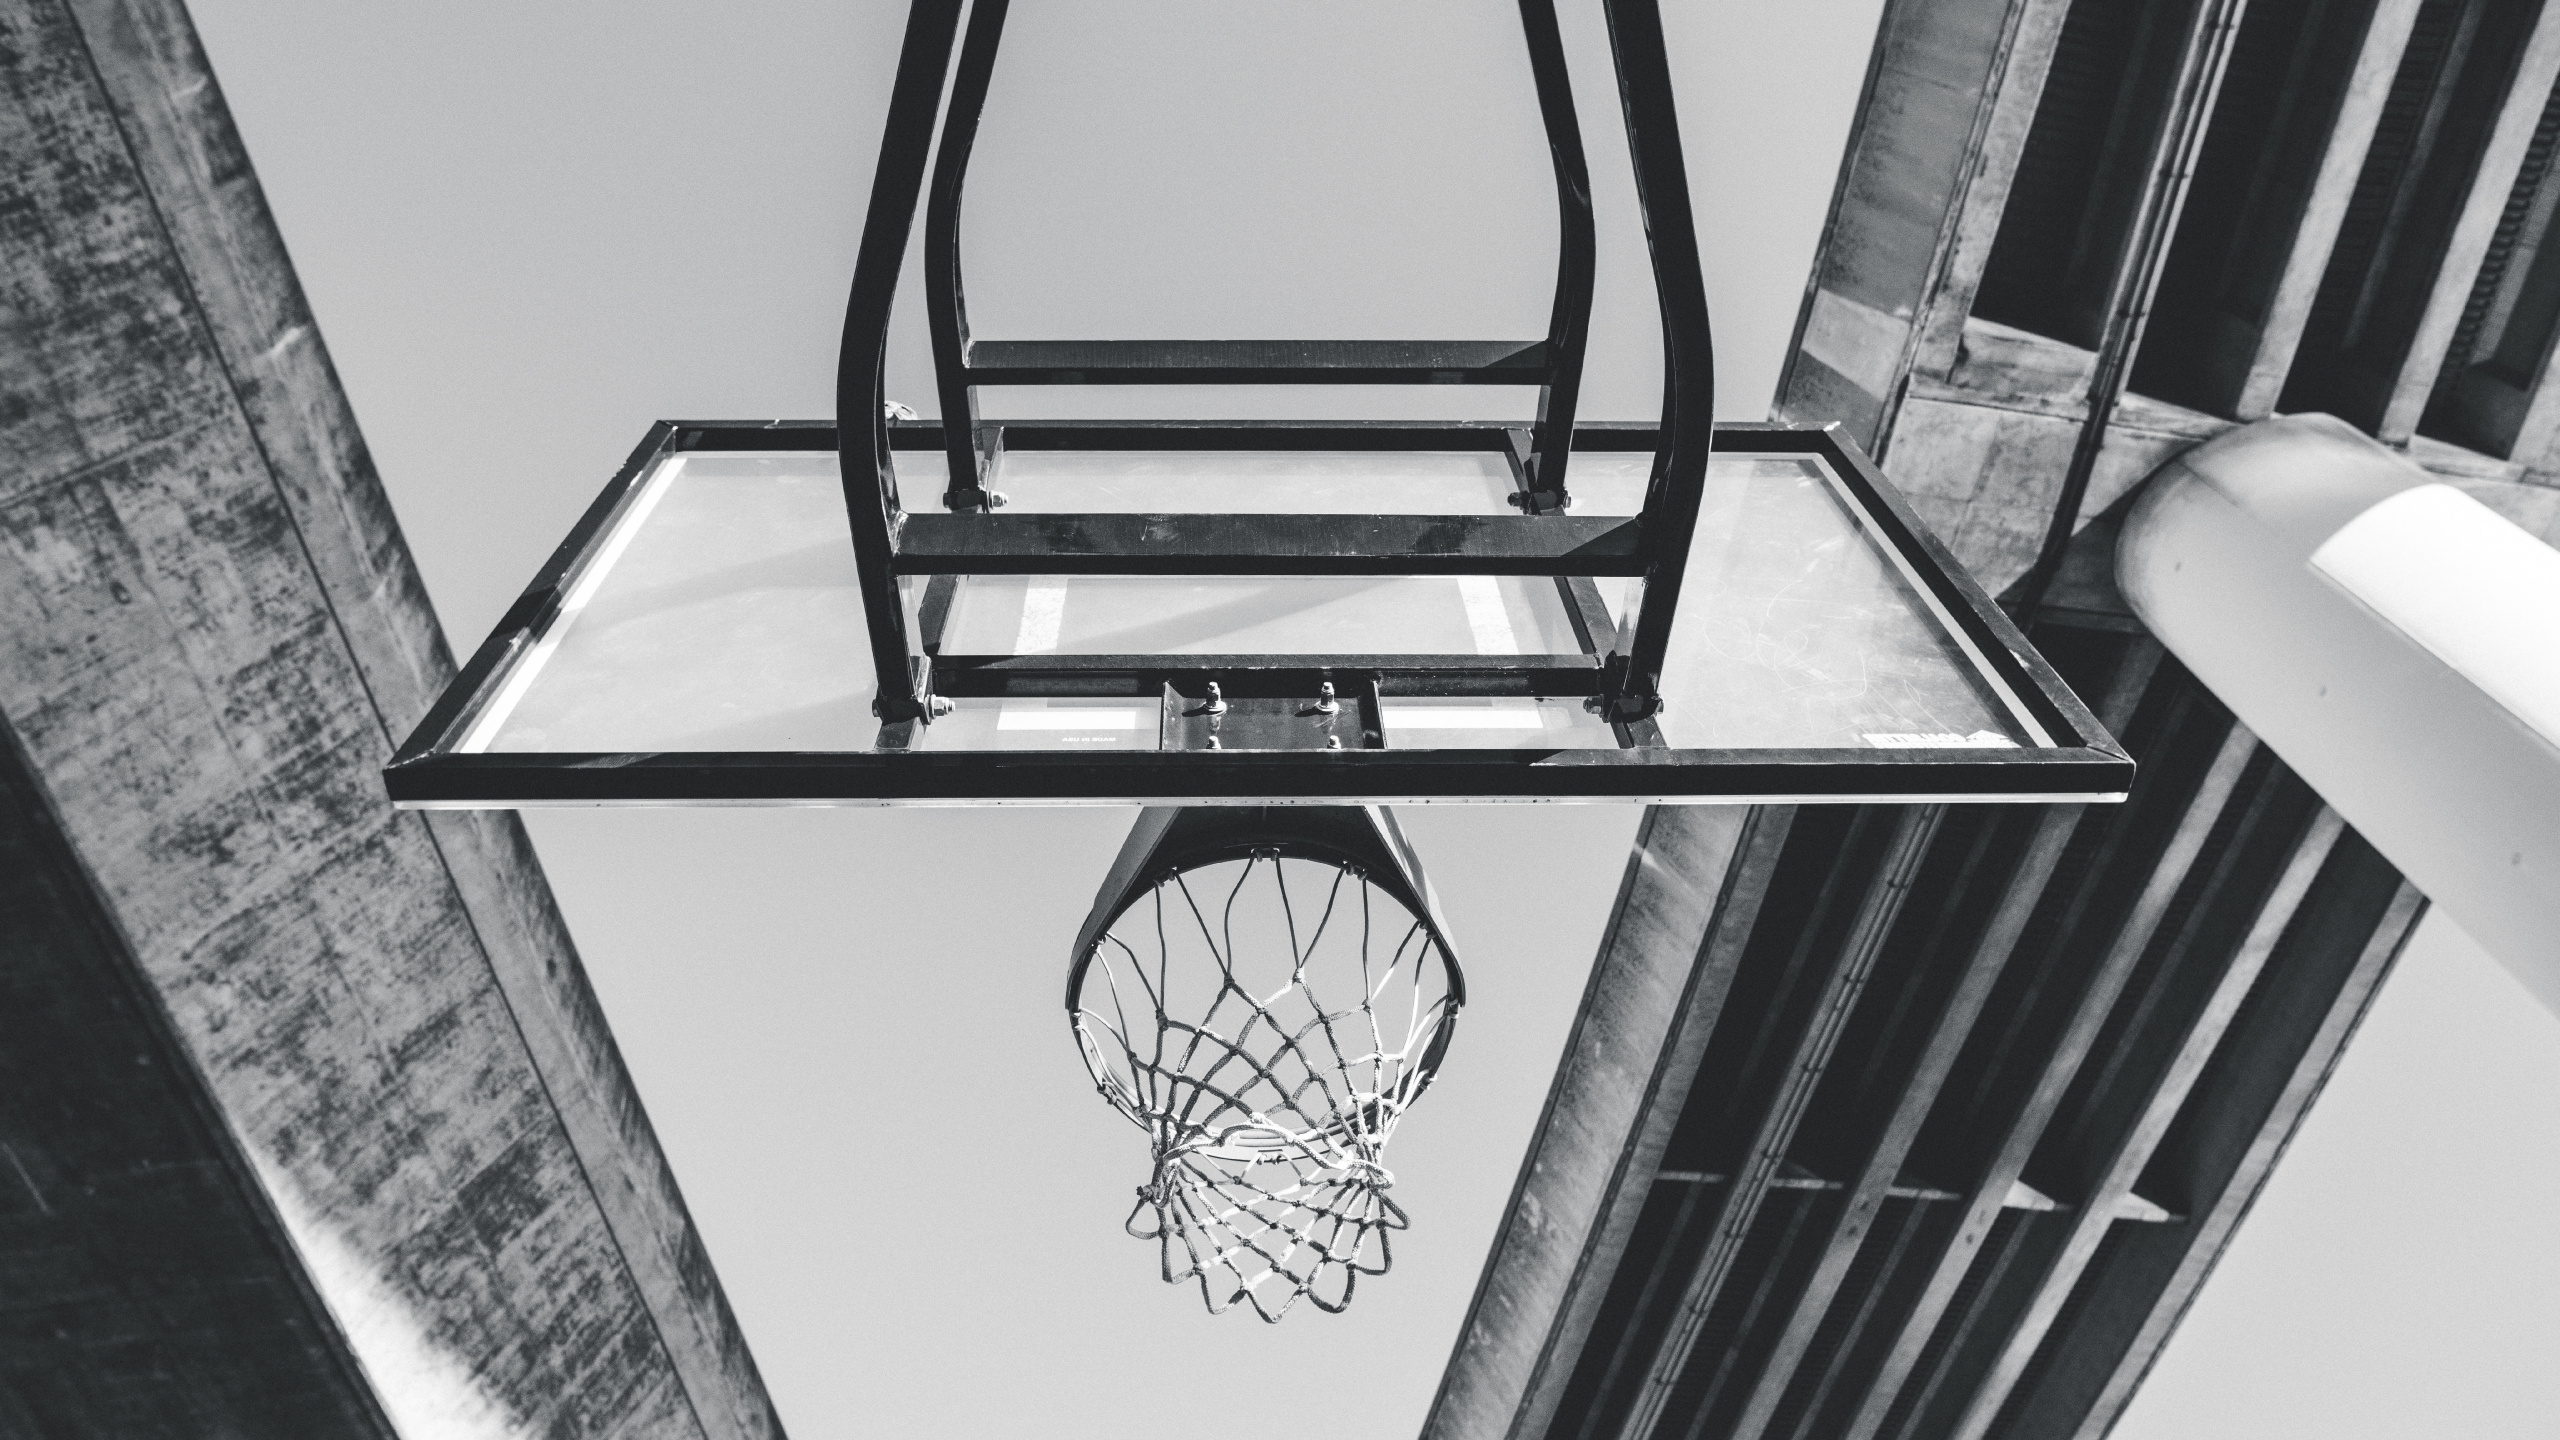 篮球, 篮板, 篮球场, 房间, 建筑 壁纸 2560x1440 允许